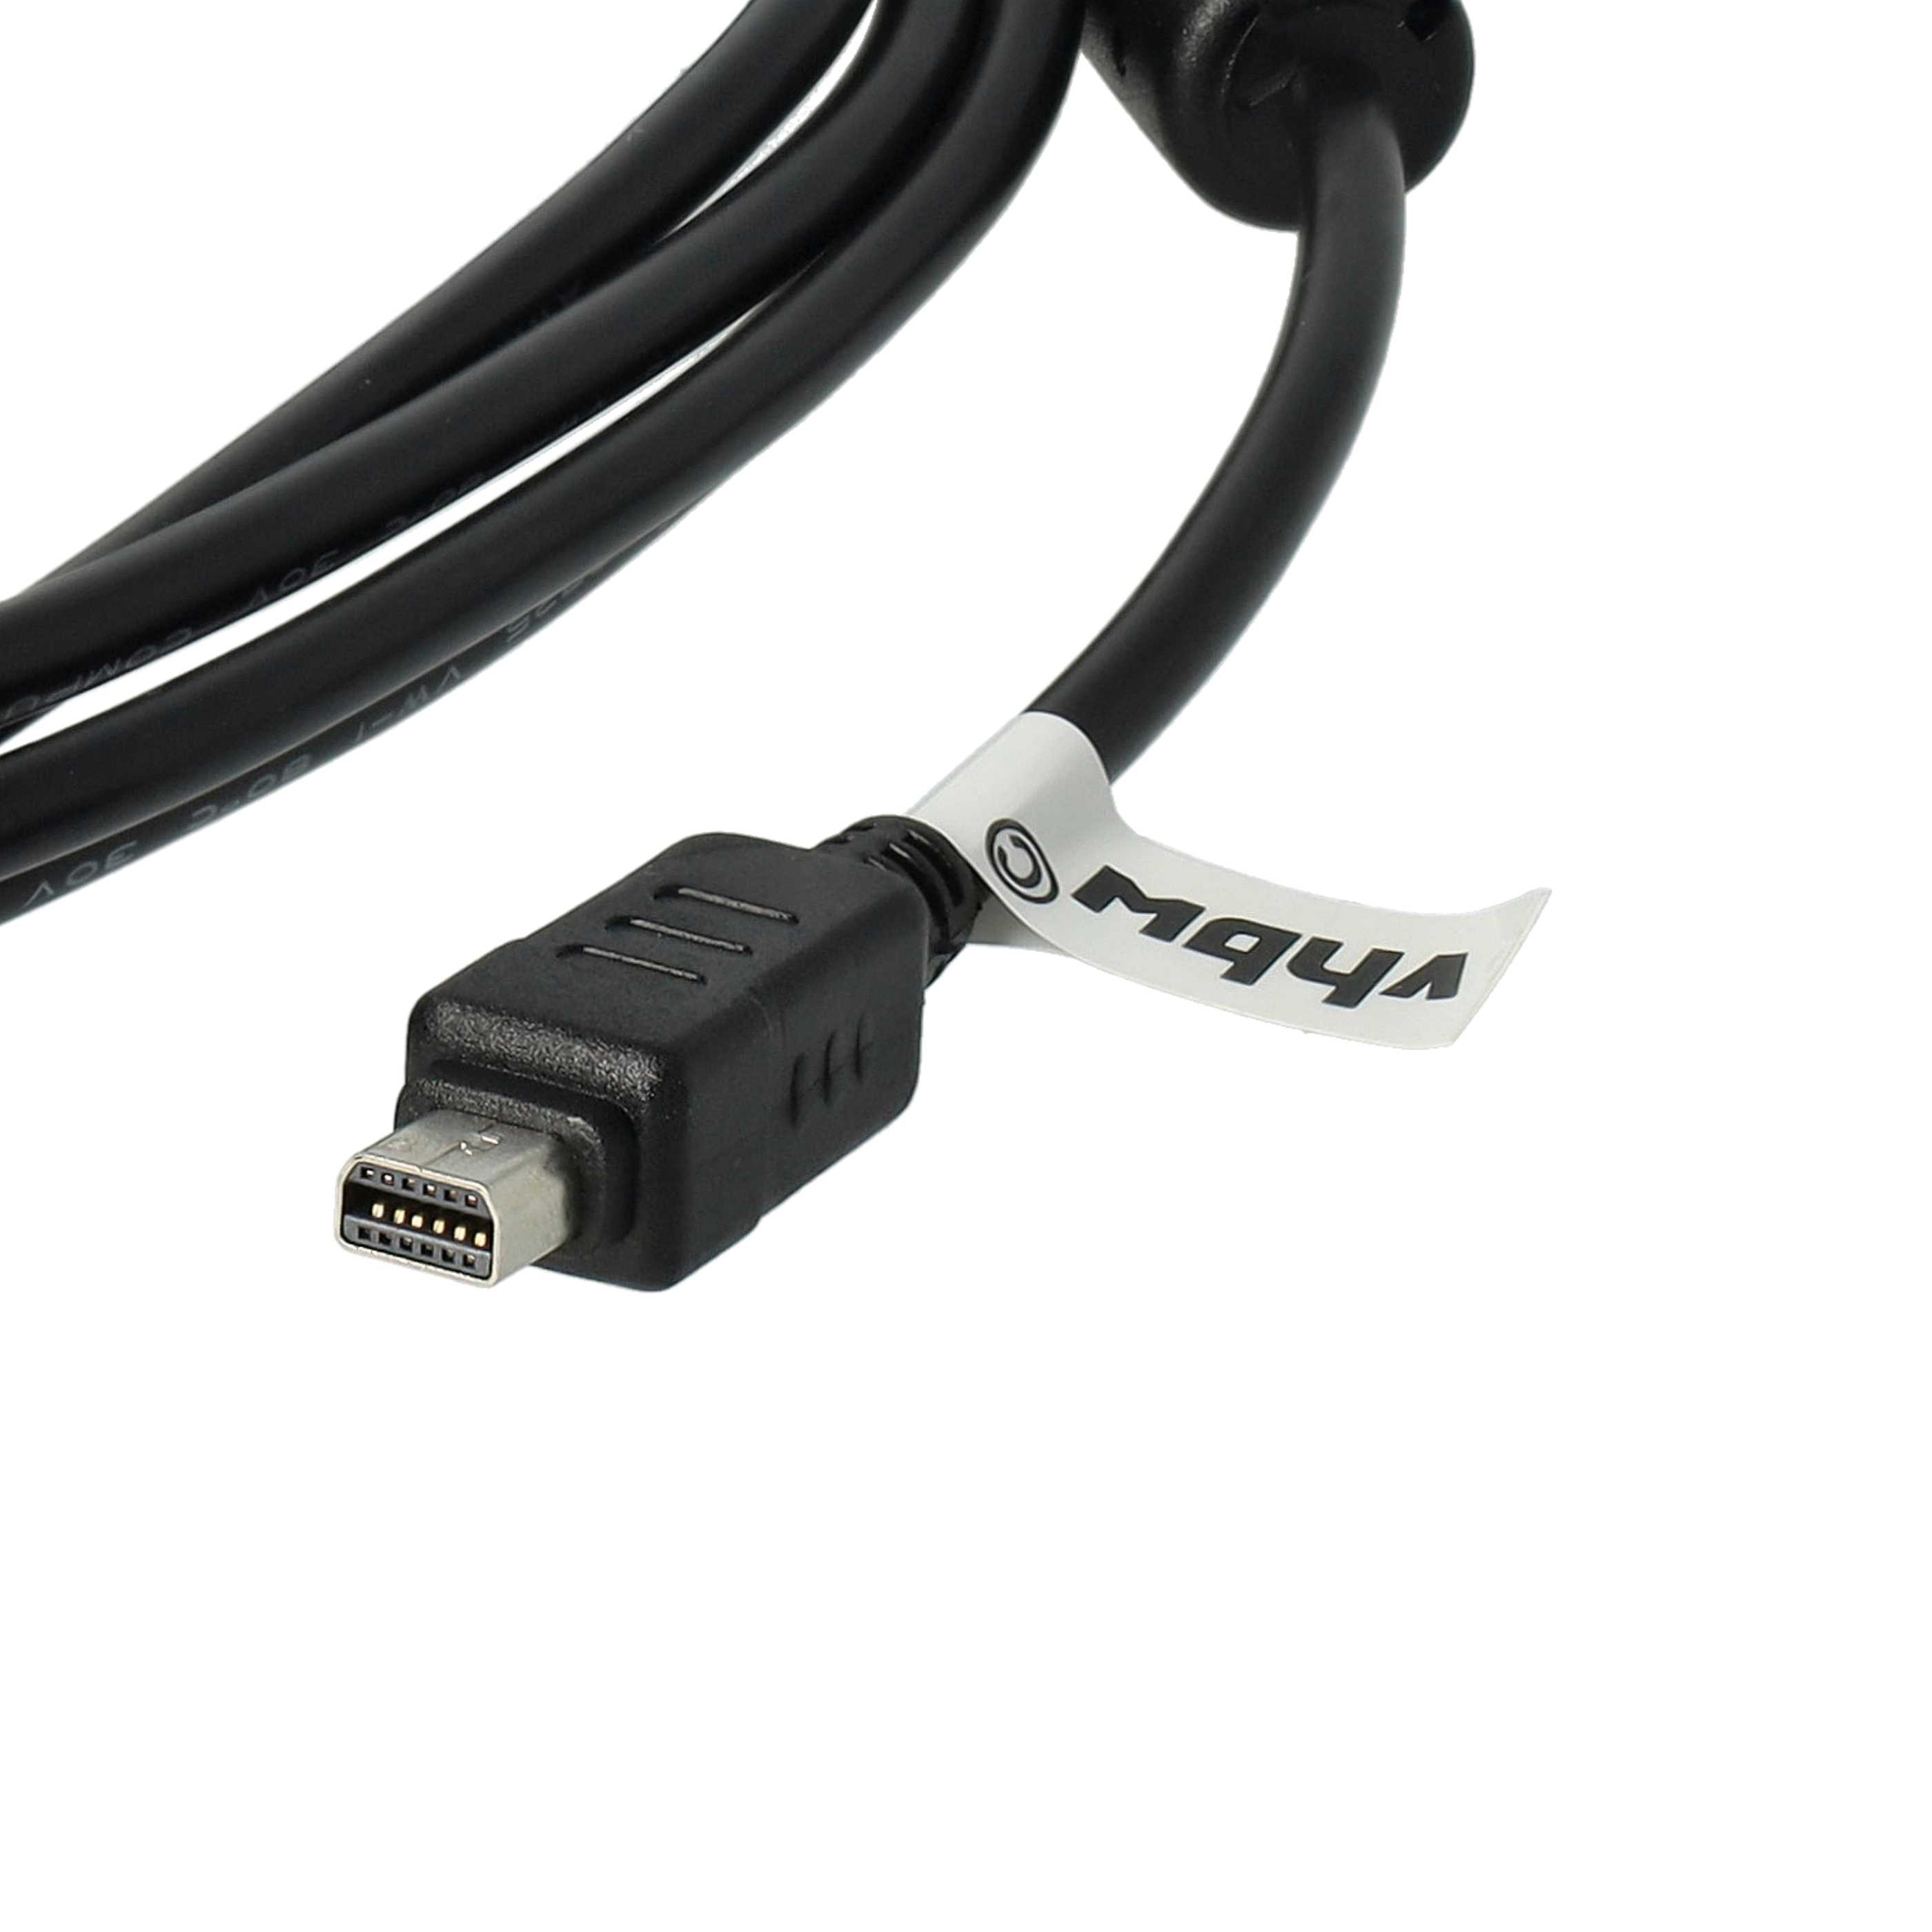 Kabel USB do aparatu Olympus zamiennik Olympus CB-USB6, CB-USB5, CB-USB8 - 150 cm 